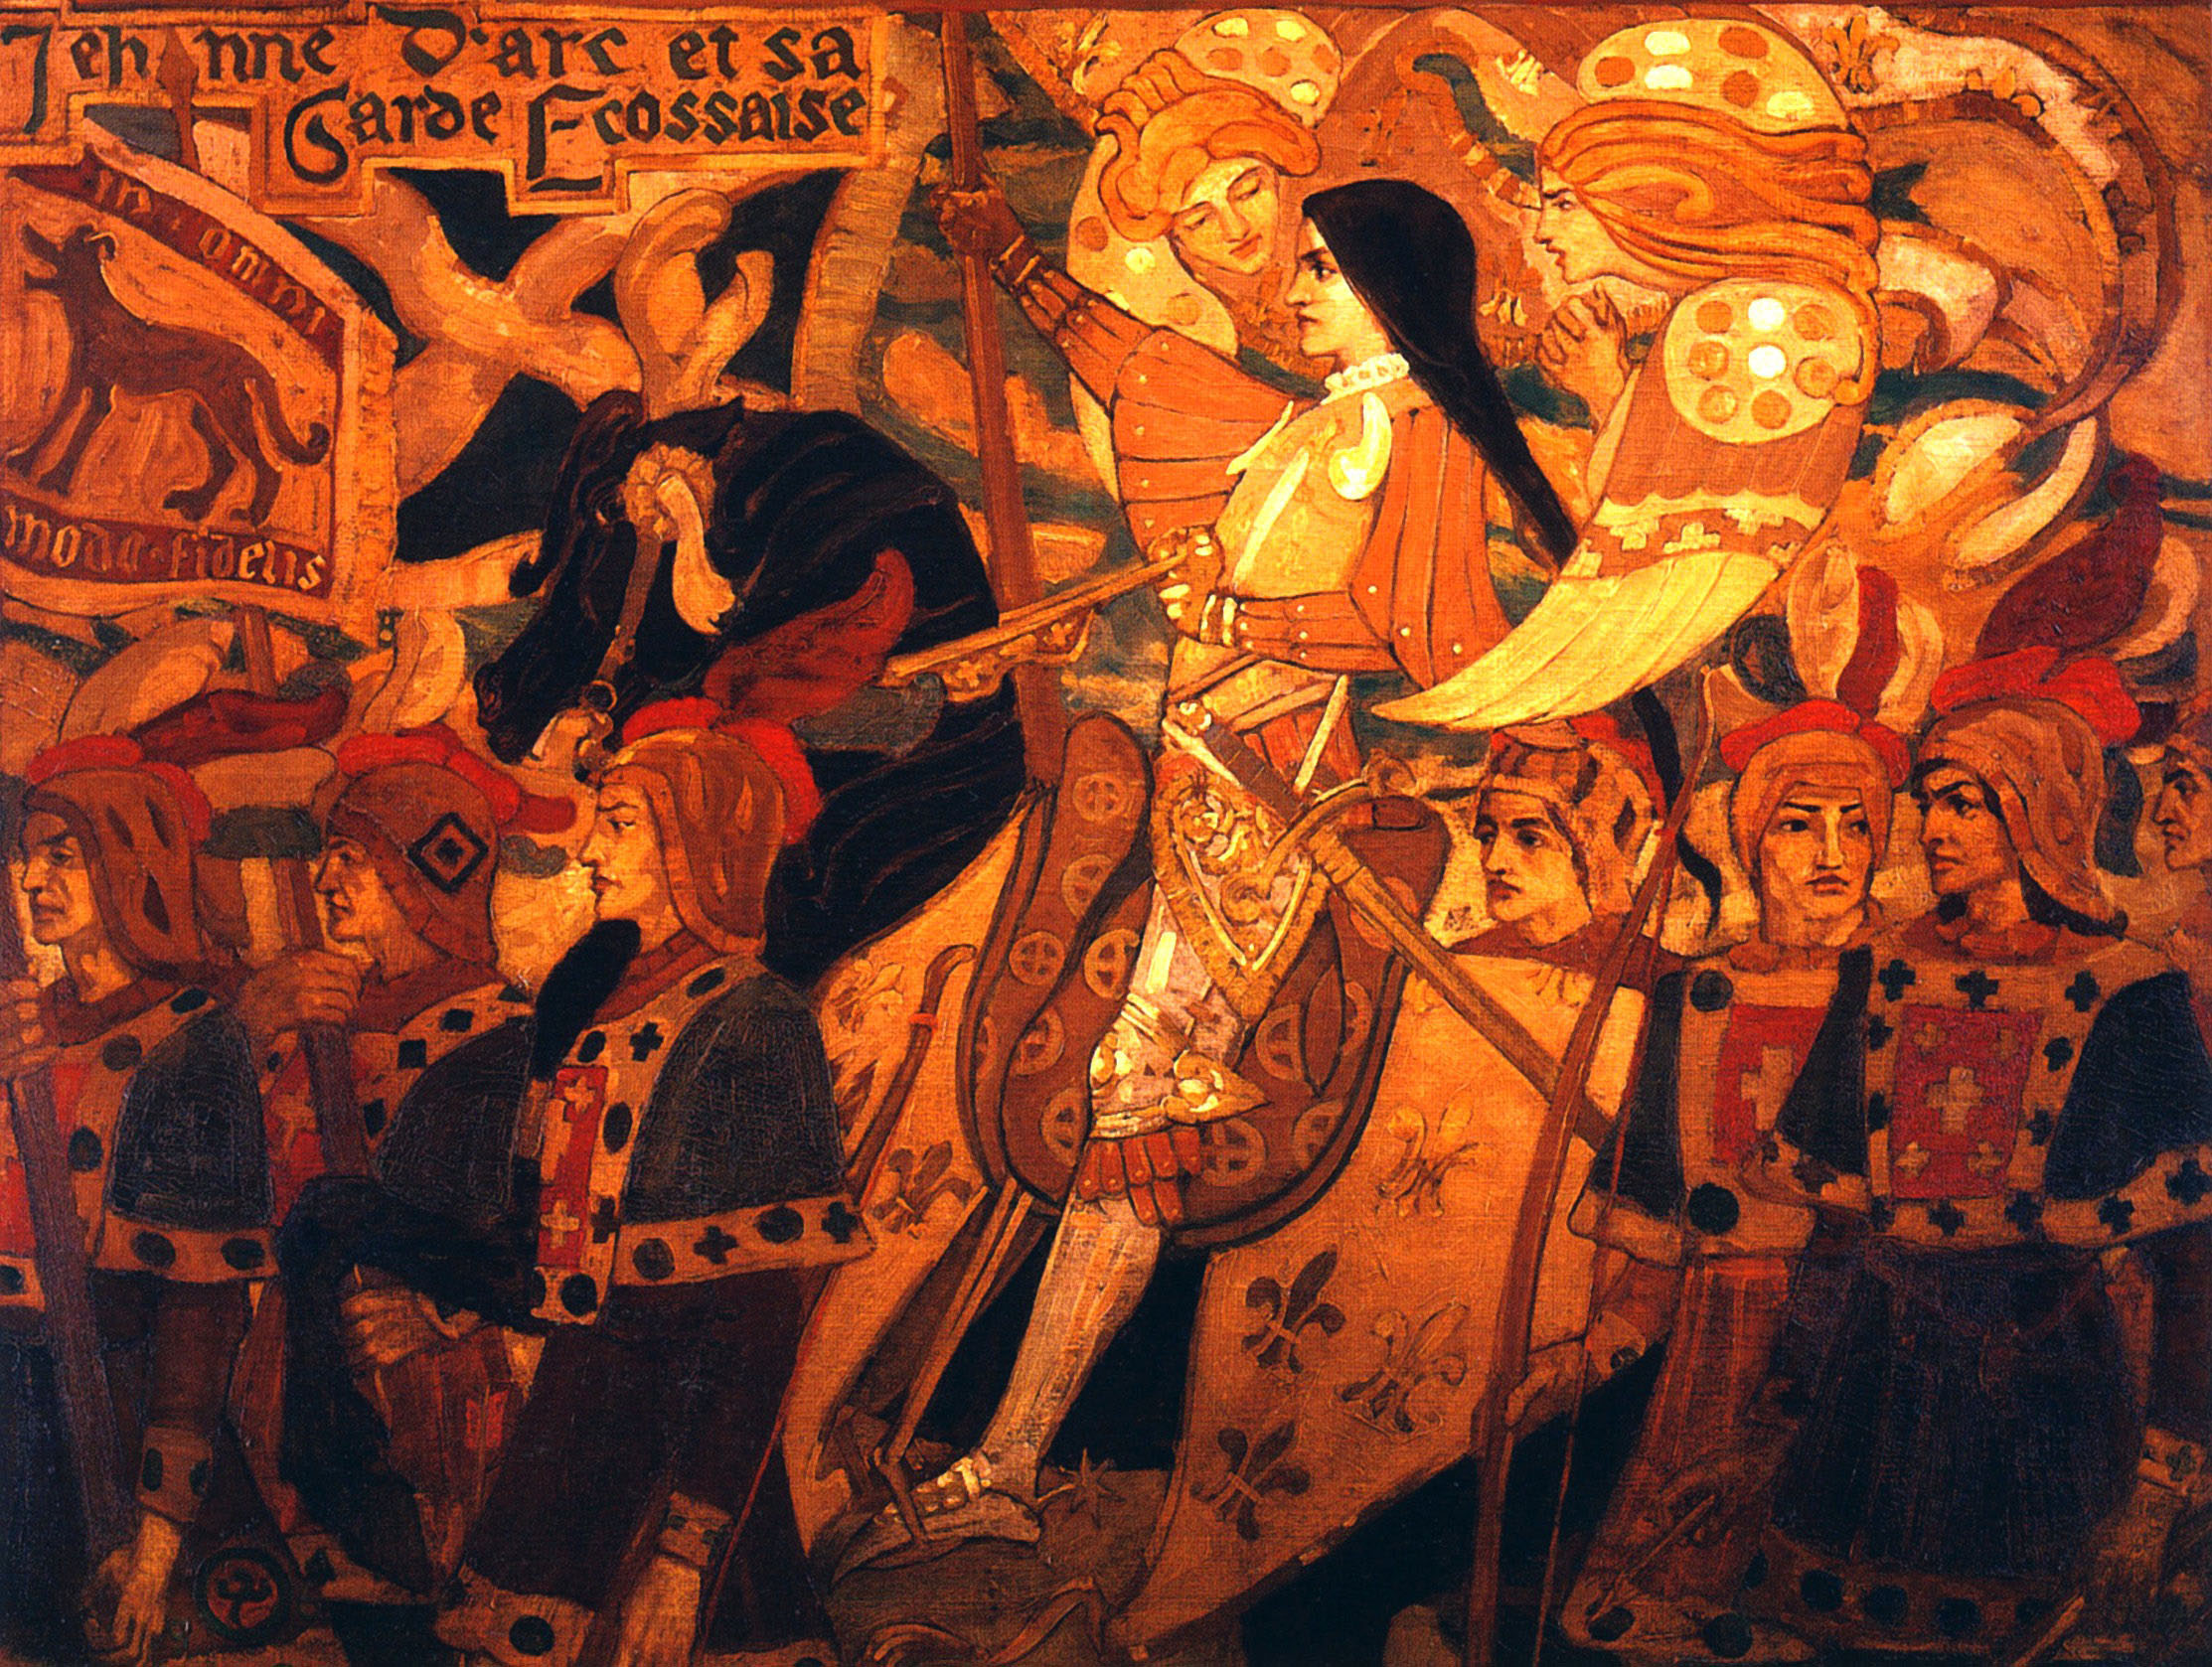 Джон Дункан. "Жанна д'Арк и ее шотландская гвардия". 1896. Городской музей и художественная галерея, Эдинбург.